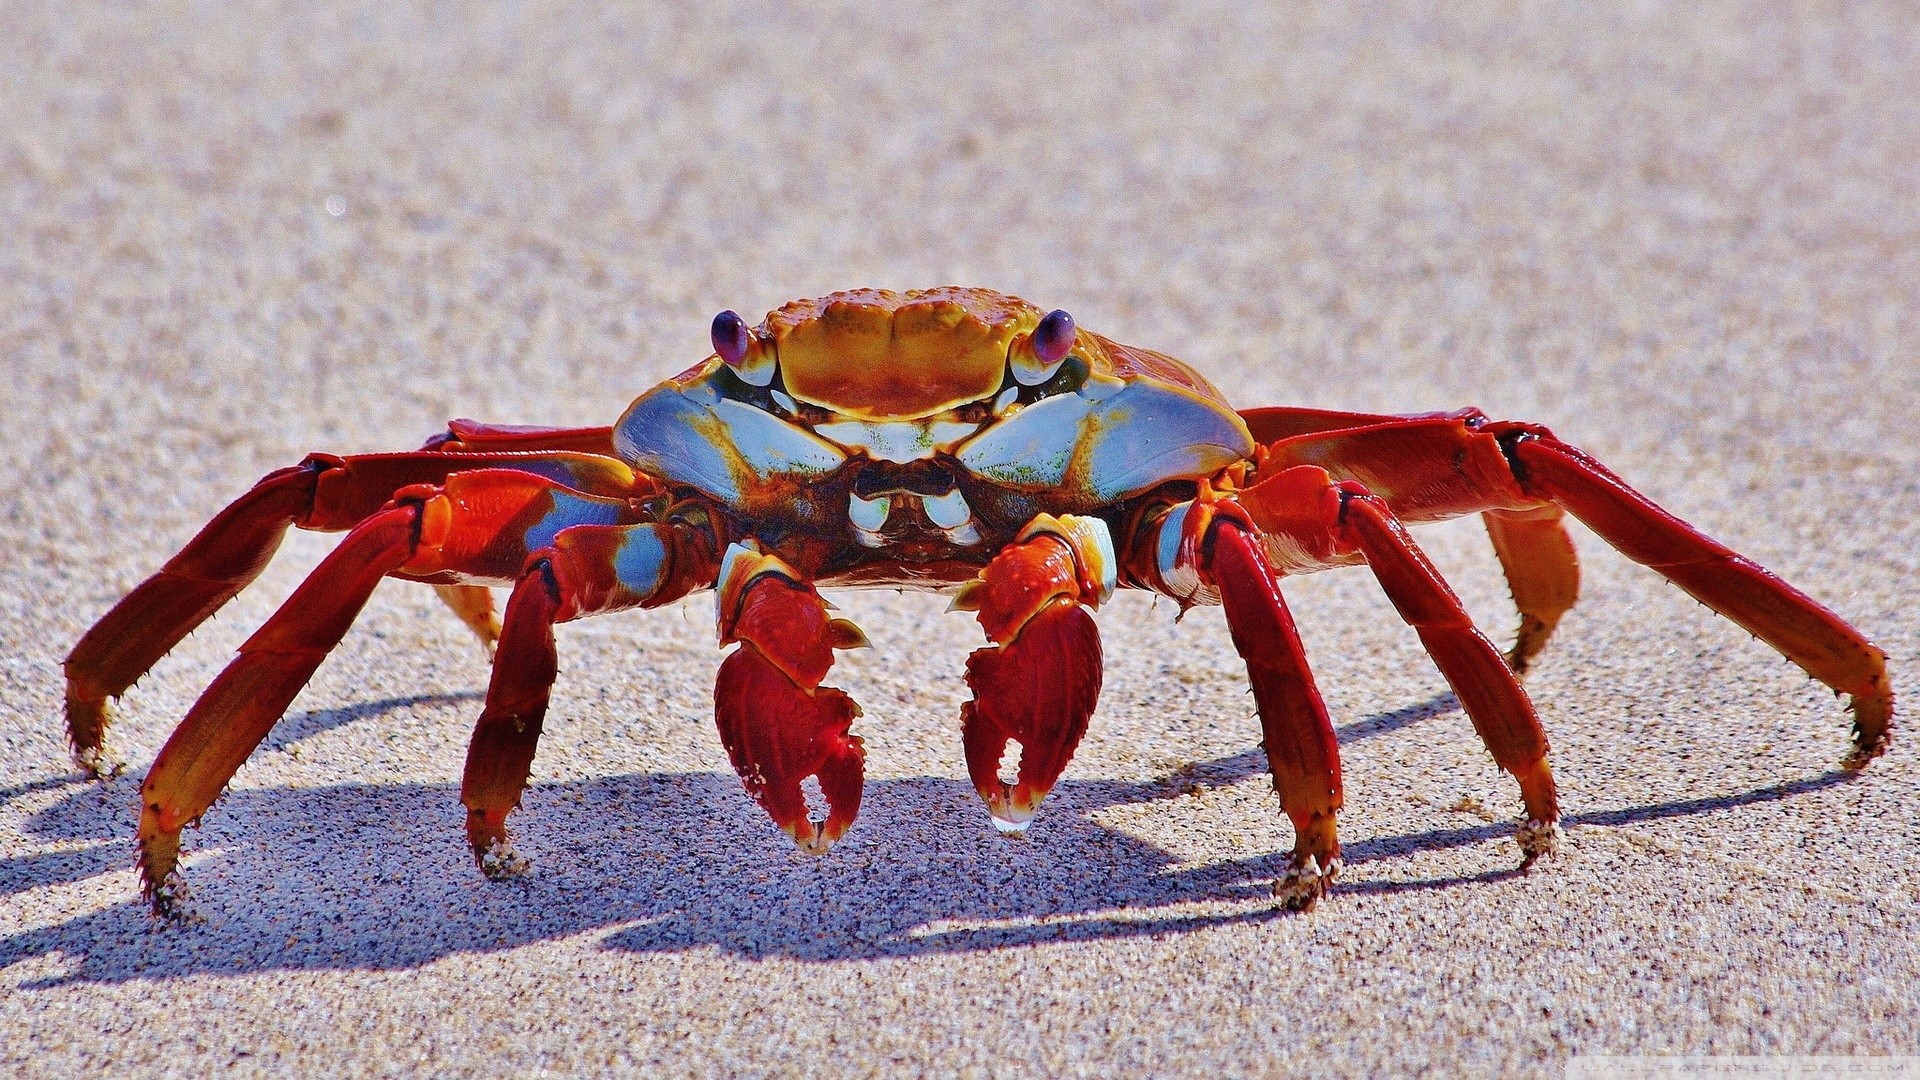 General 1920x1080 crabs animals crustaceans